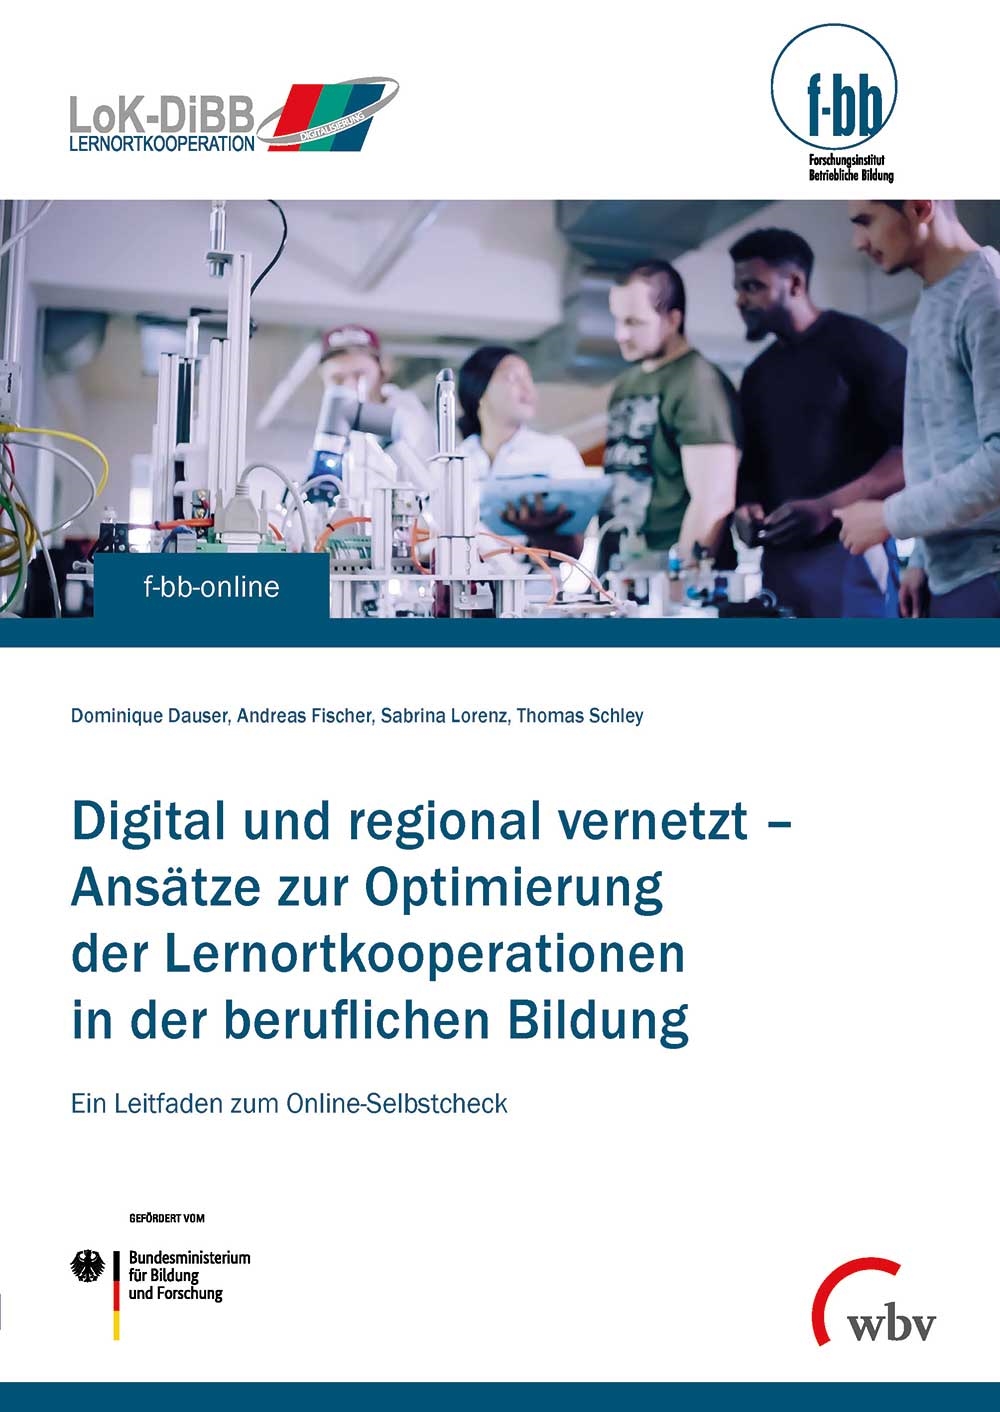 Digital und regional vernetzt – Ansätze zur Optimierung der Lernortkooperation in der beruflichen Bildung